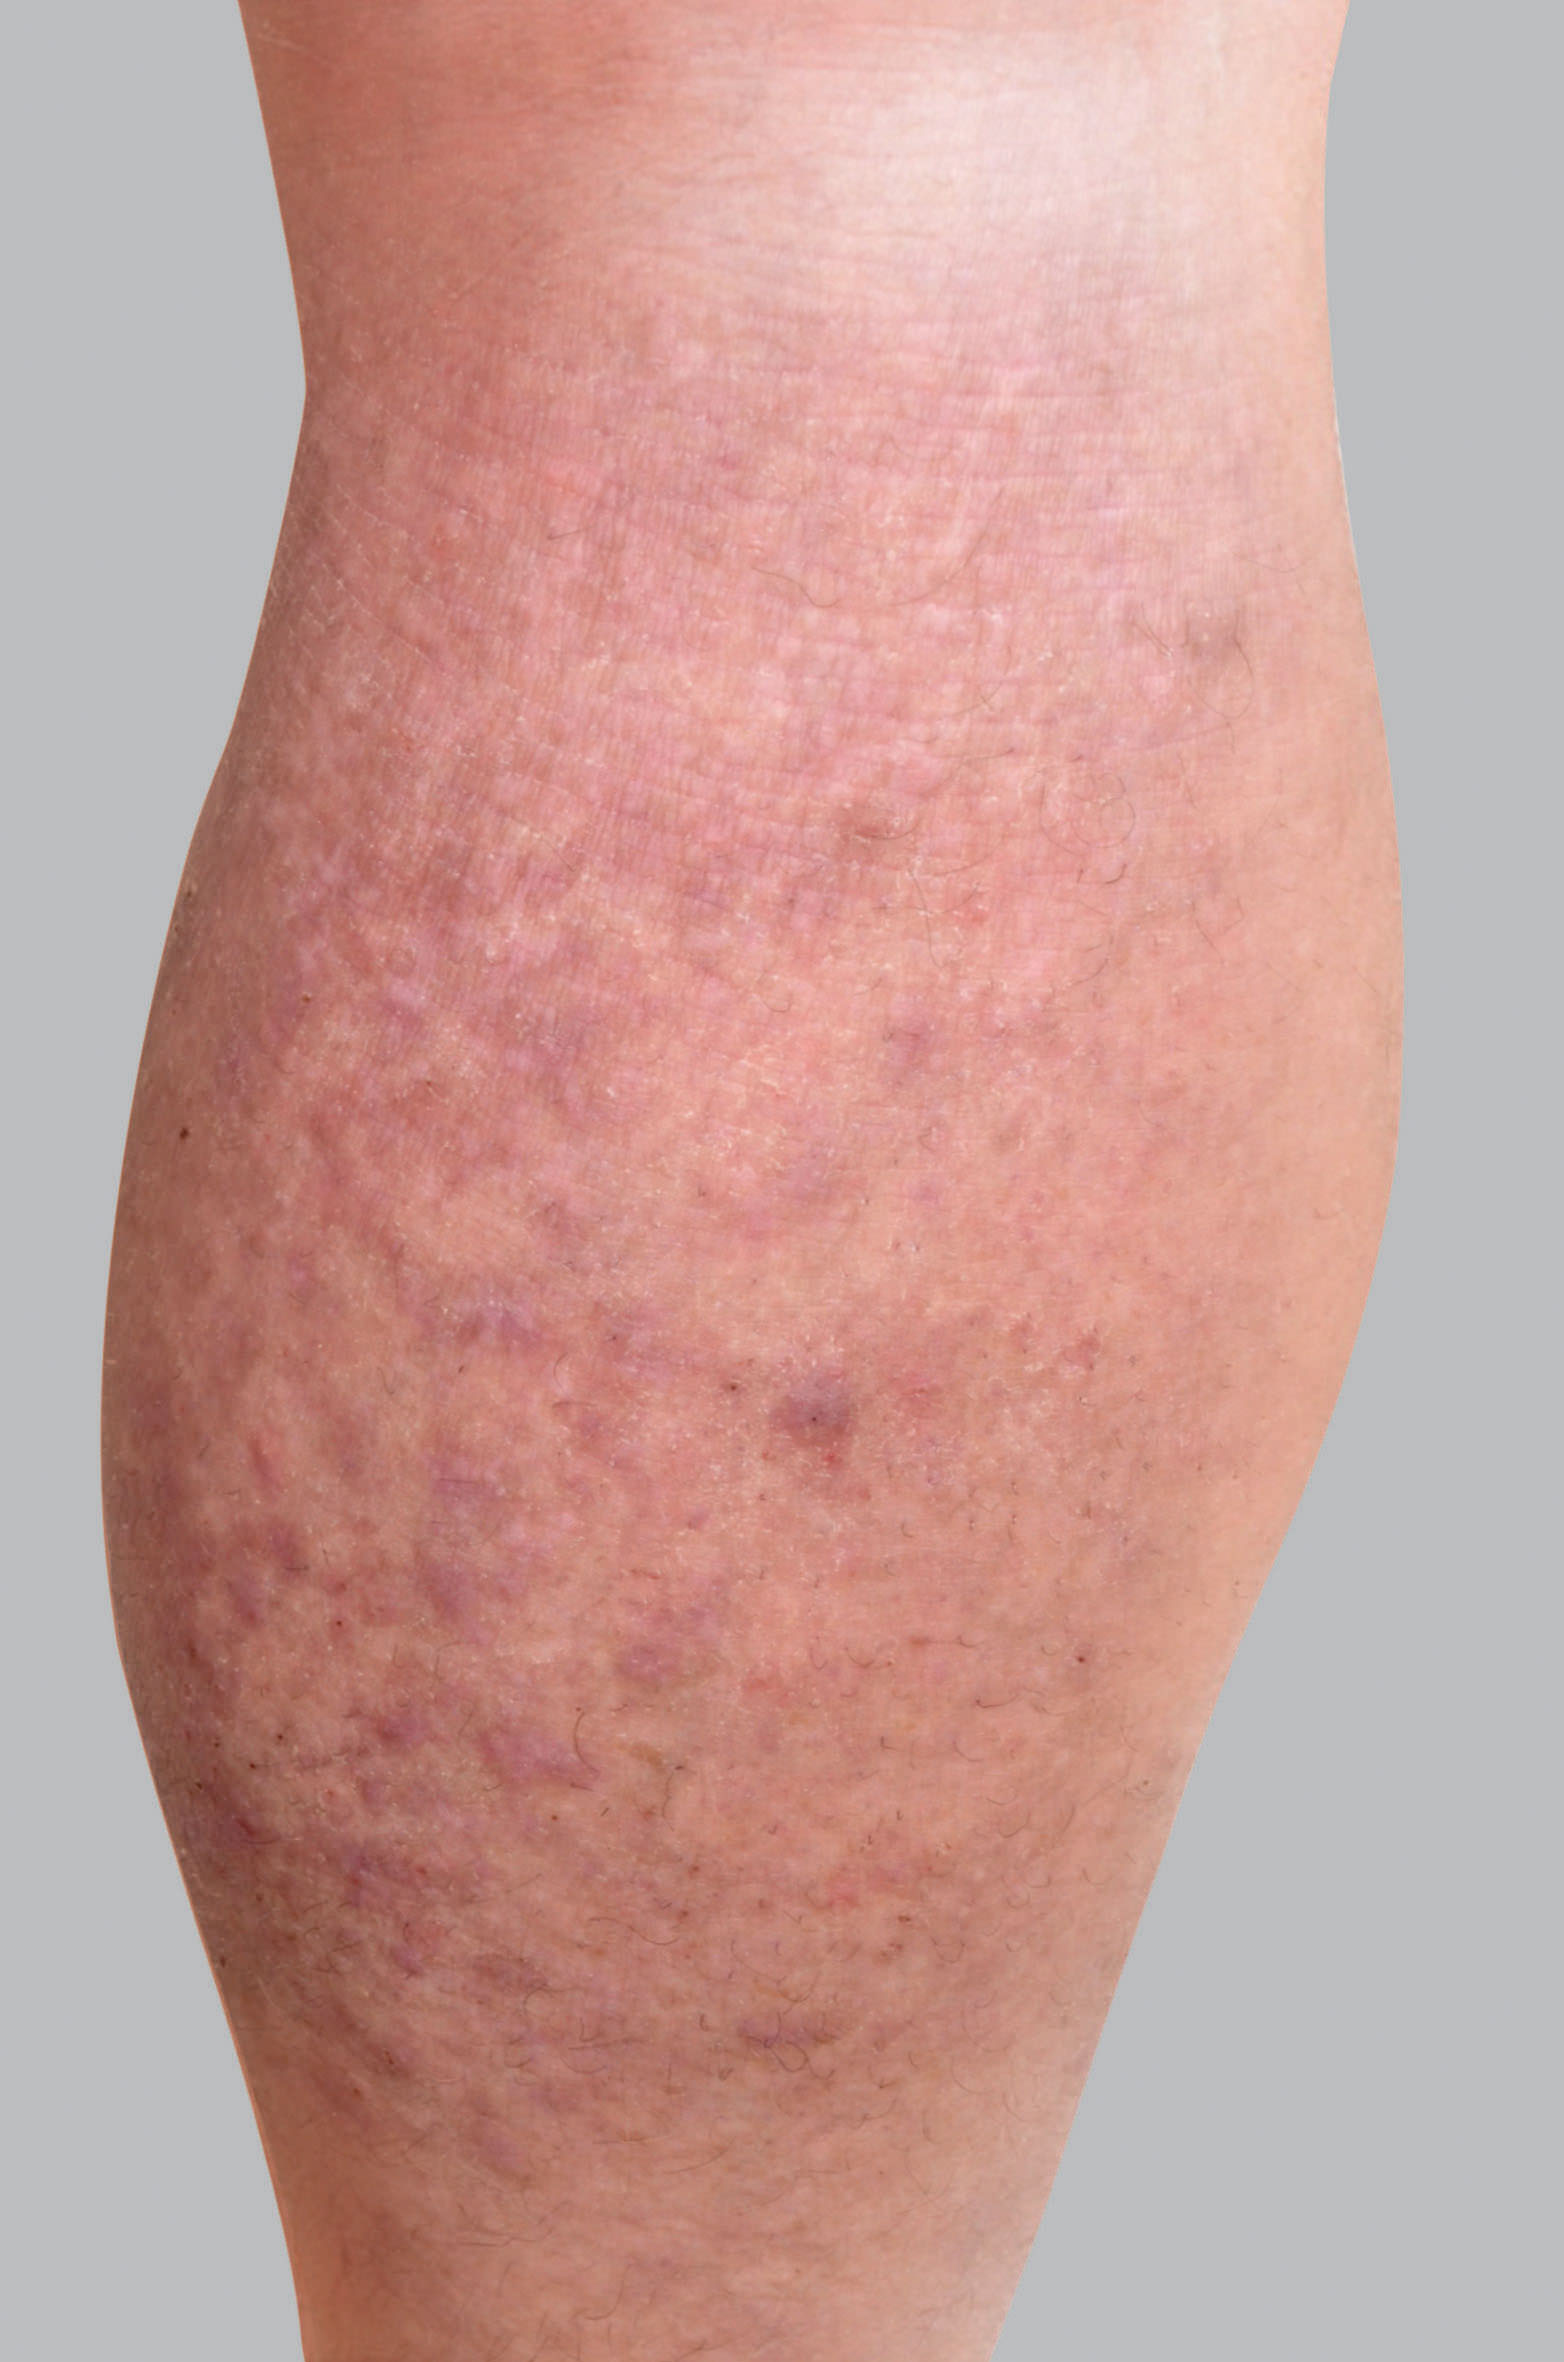 Sintomas do eczema atópico: pápulas